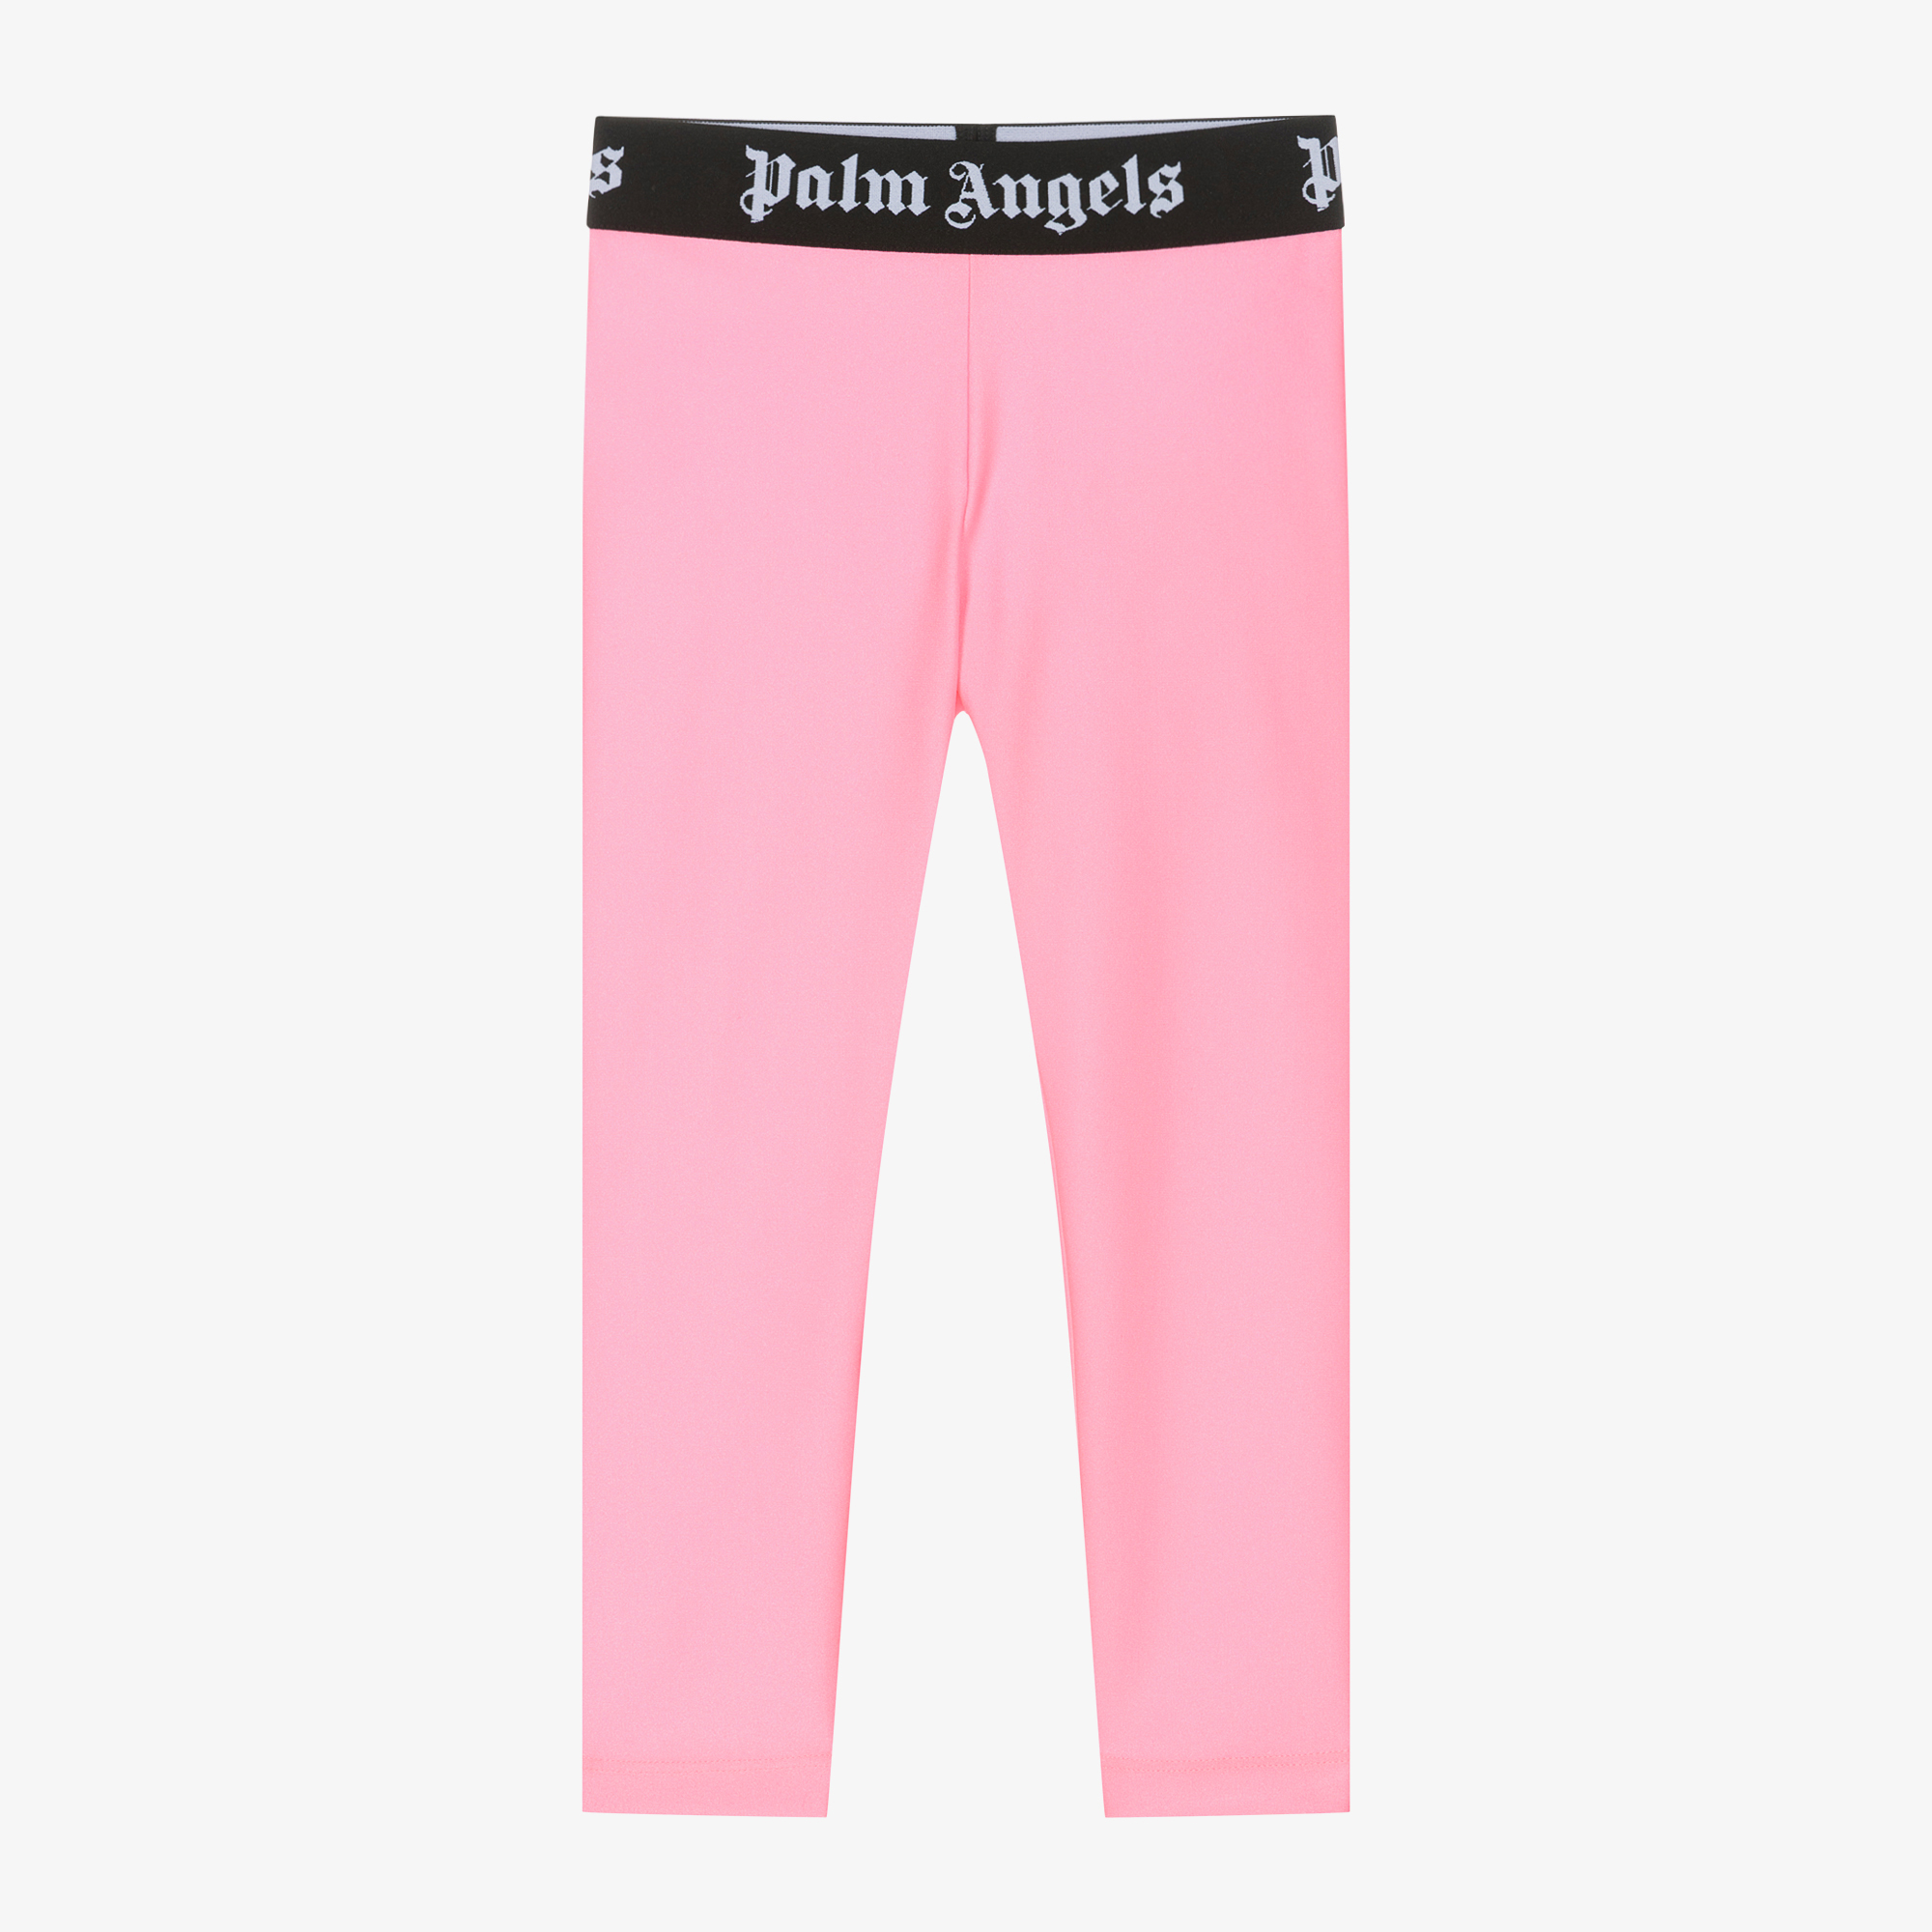  Bright Pink Leggings